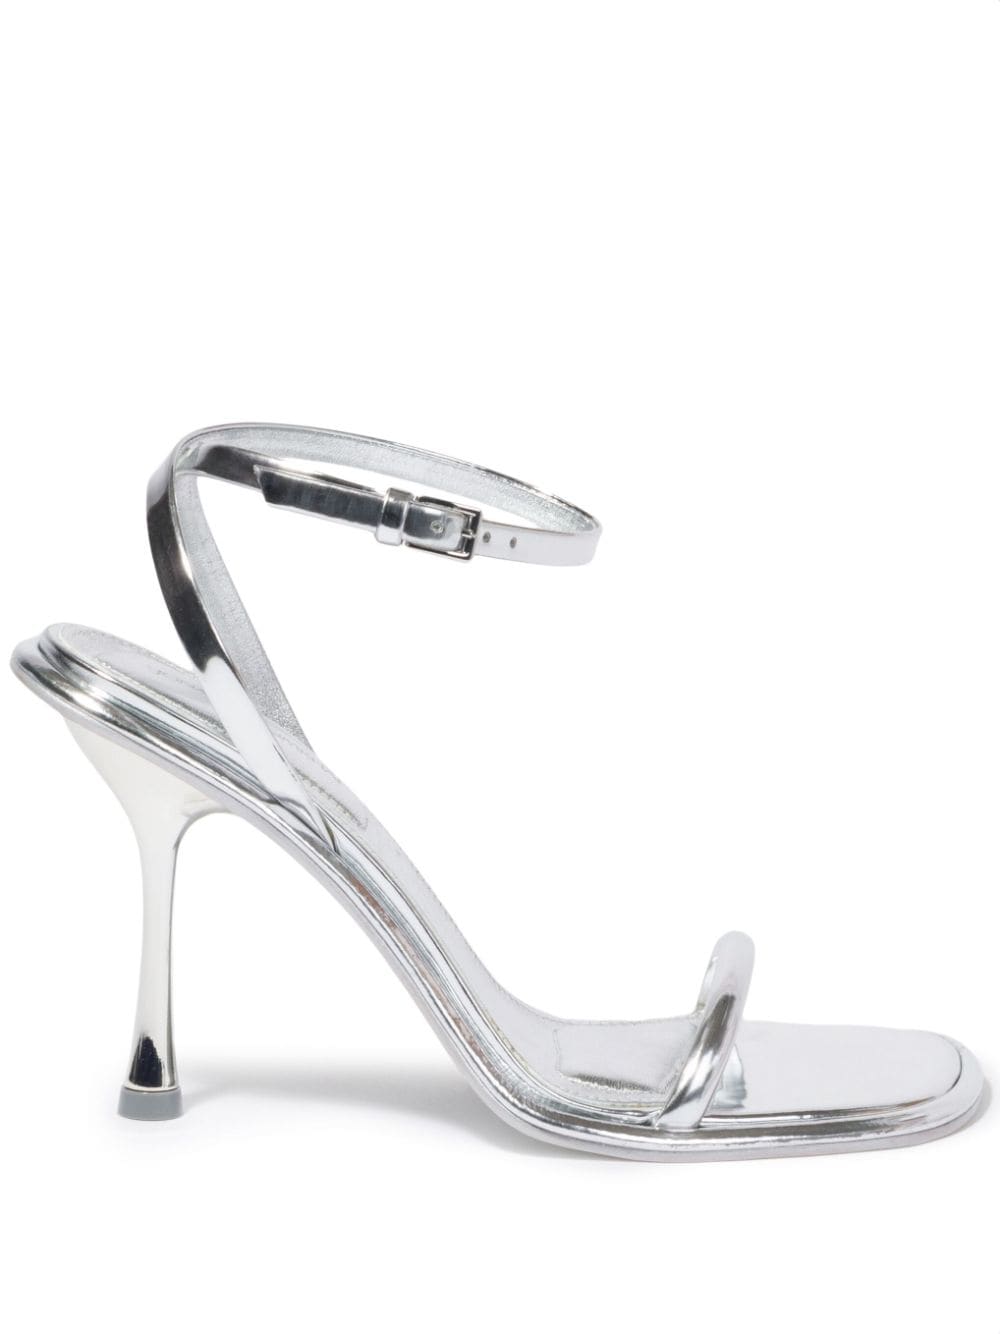 Simkhai Carmela metallic sandals - Silver von Simkhai